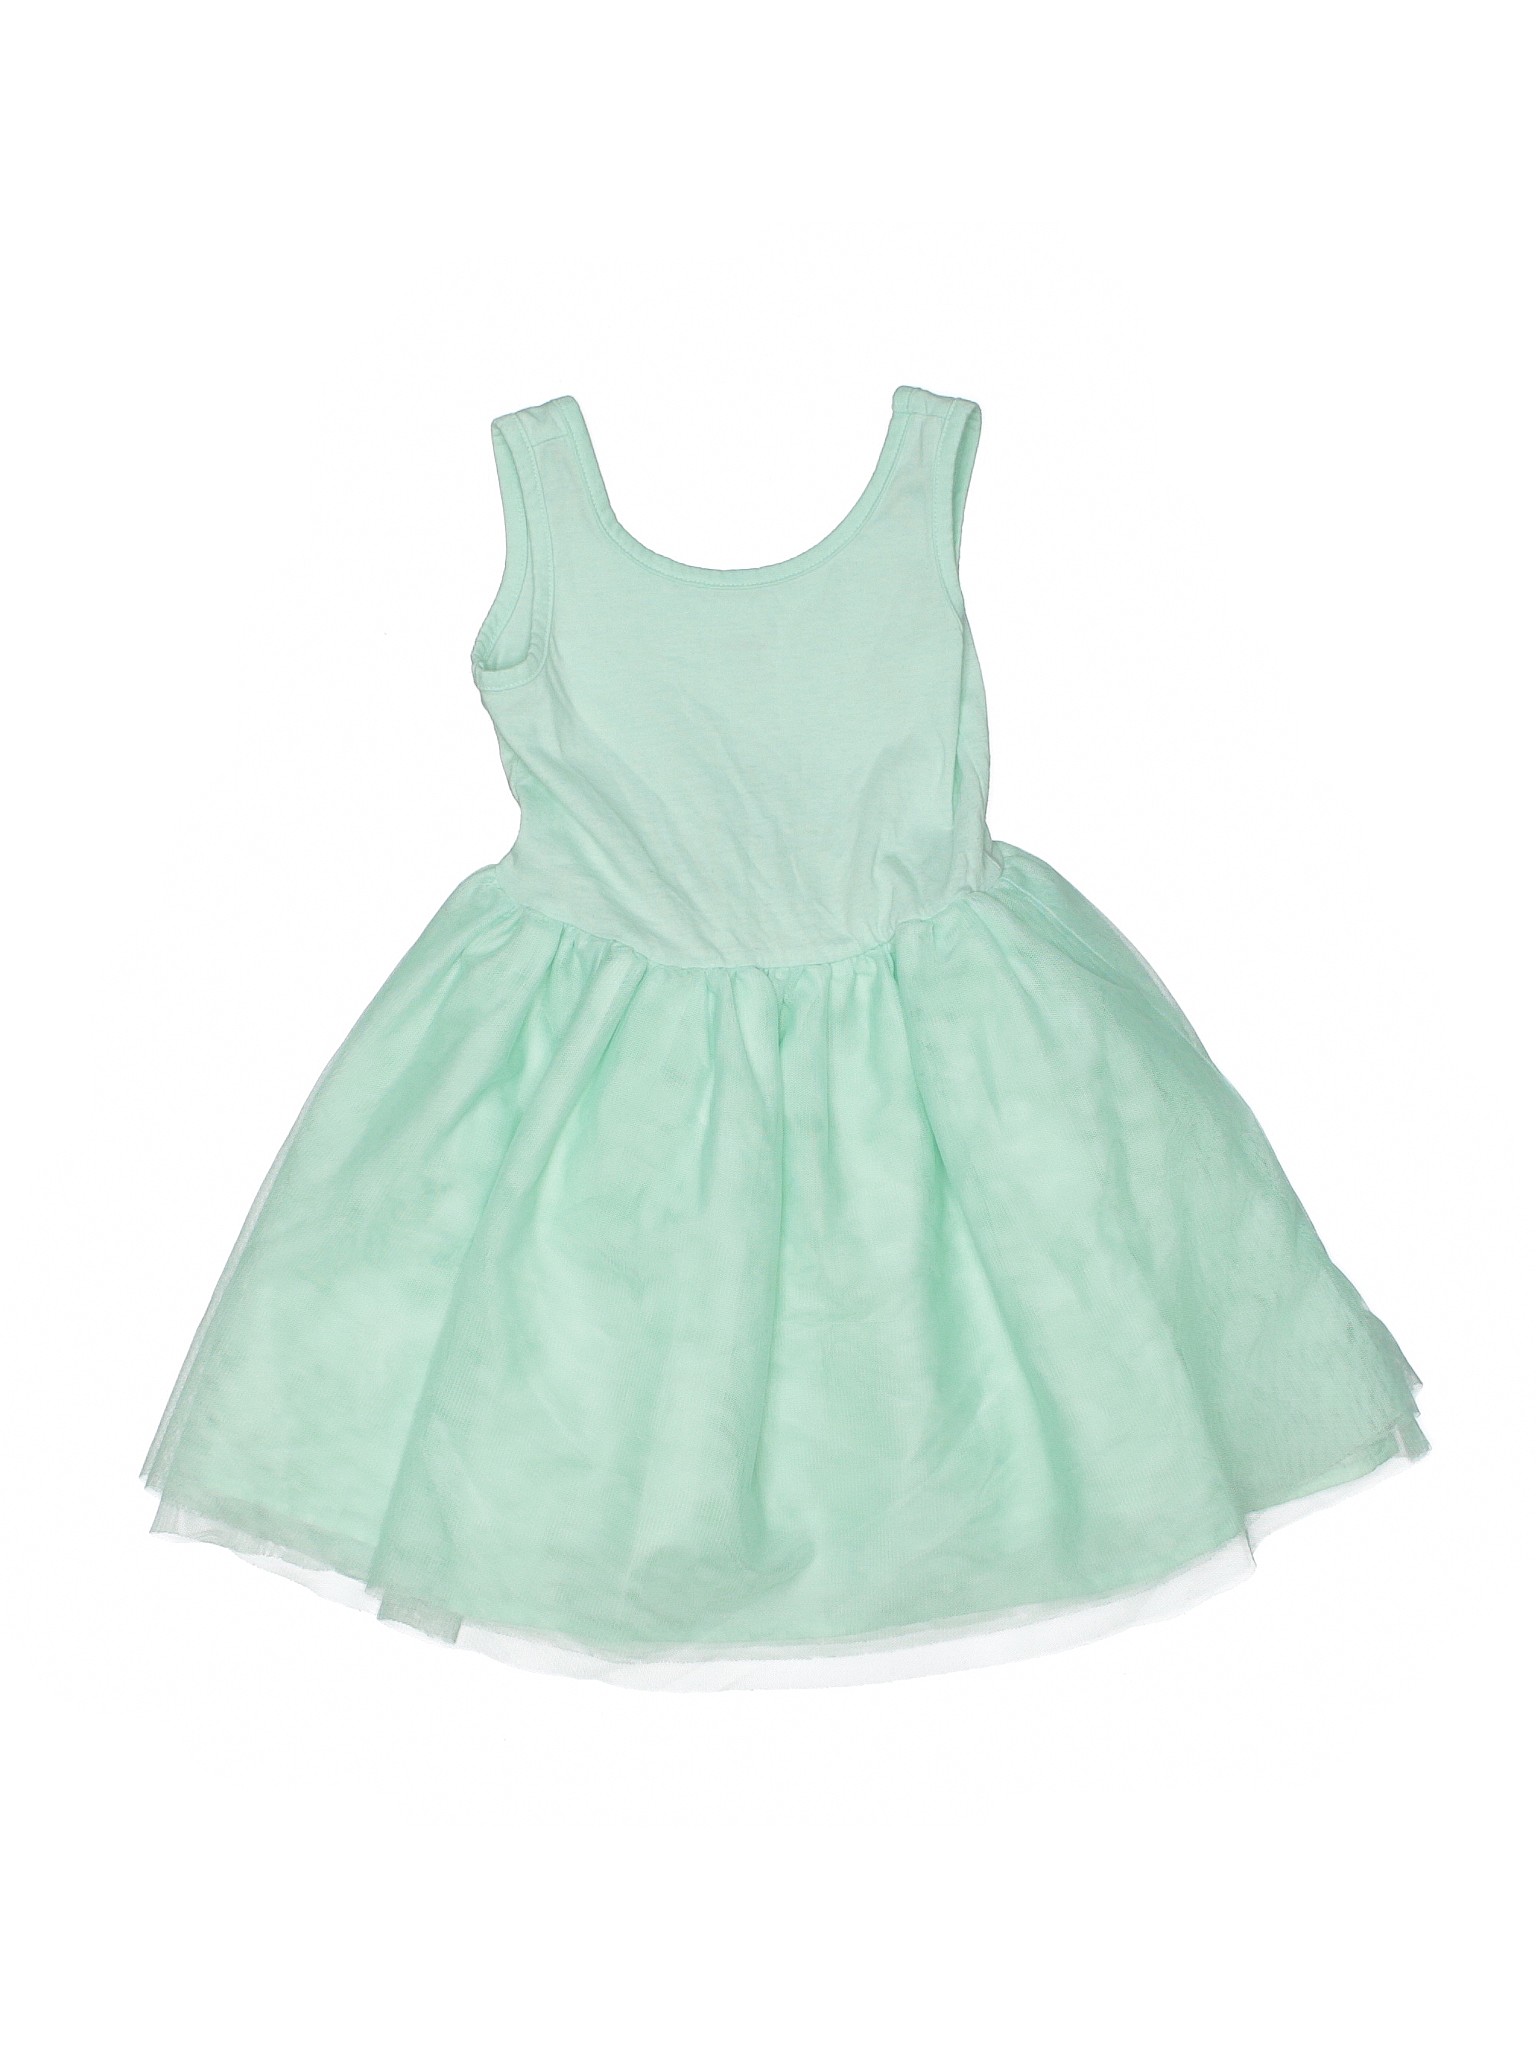 green dress 4t